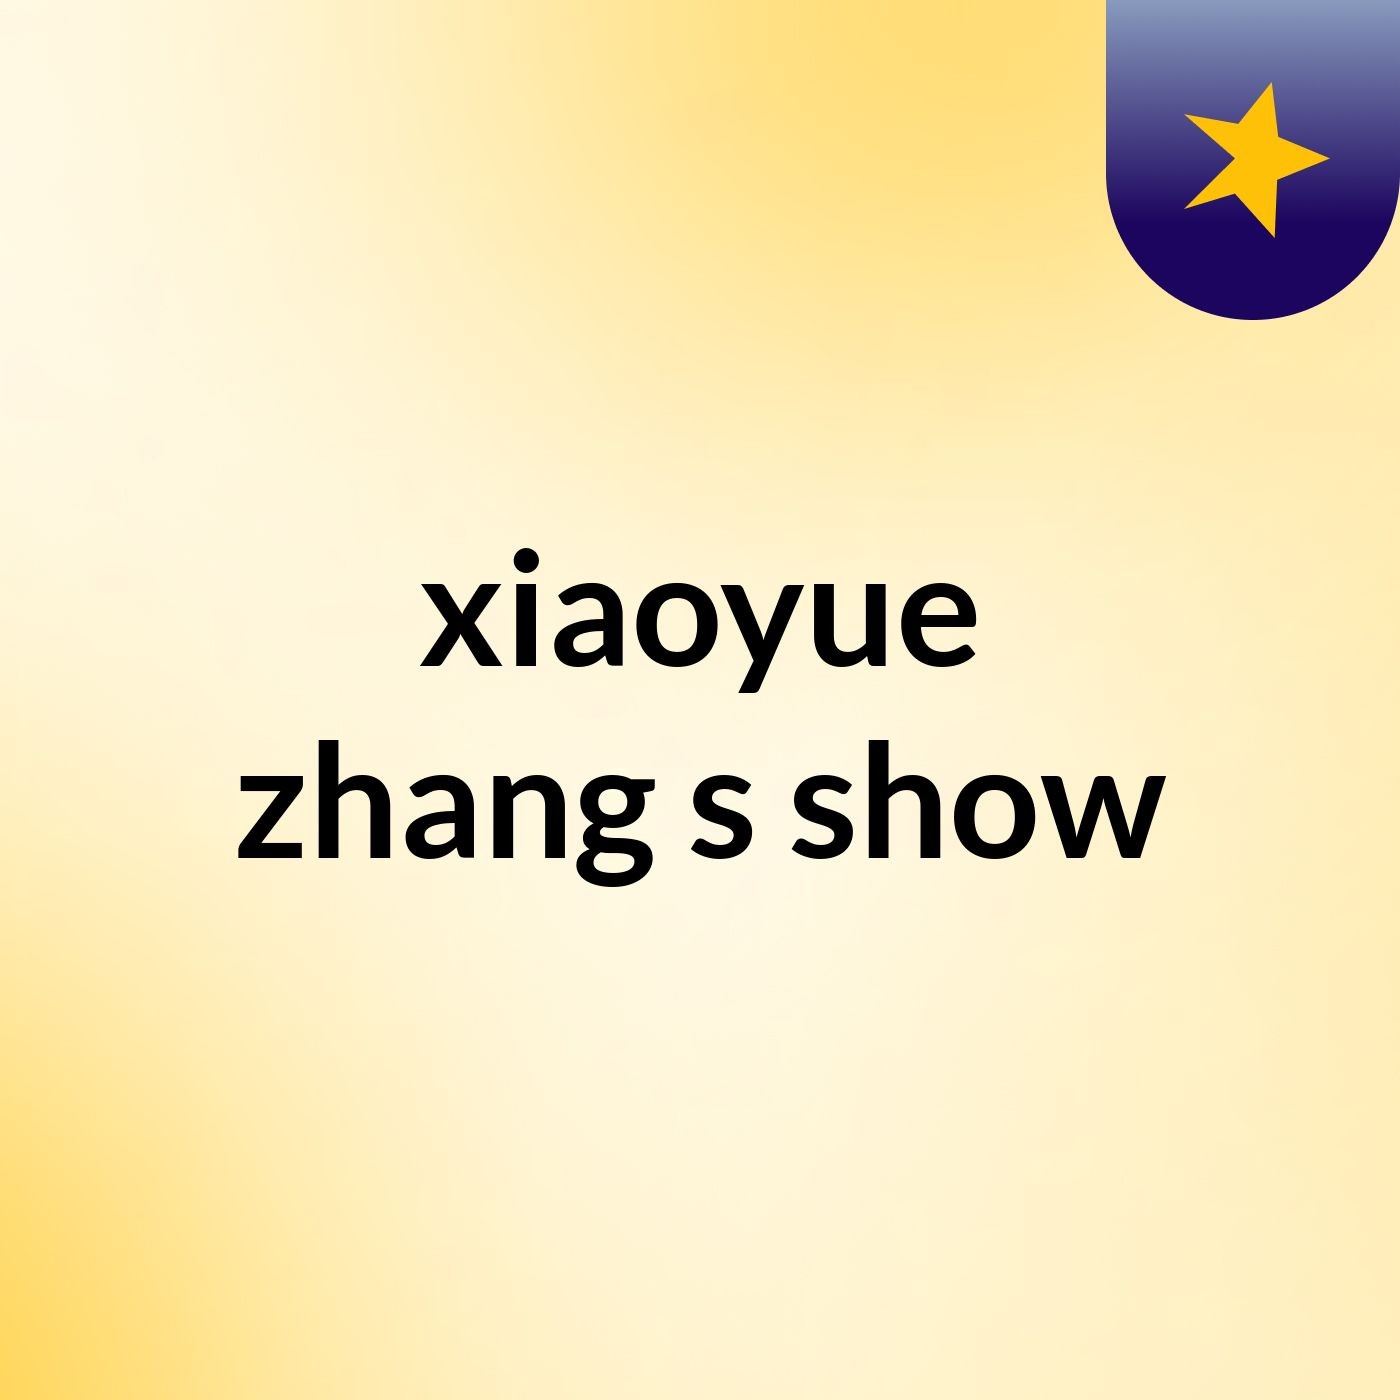 xiaoyue zhang's show